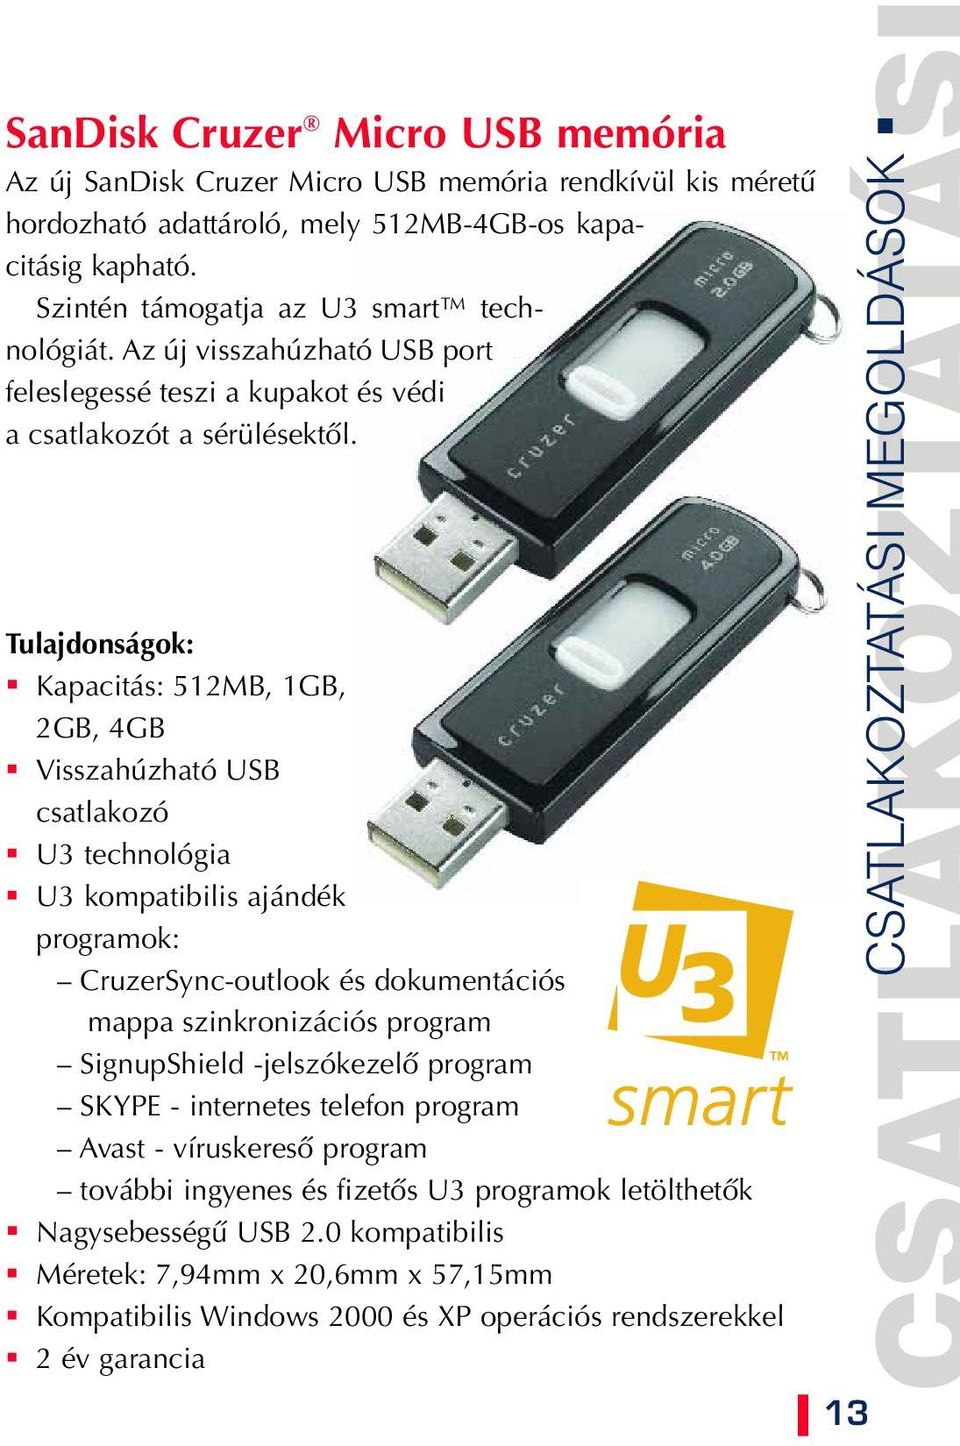 Tulajdonságok: Kapacitás: 512MB, 1GB, 2GB, 4GB Visszahúzható USB csatlakozó U3 technológia U3 kompatibilis ajándék programok: CruzerSync-outlook és dokumentációs mappa szinkronizációs program